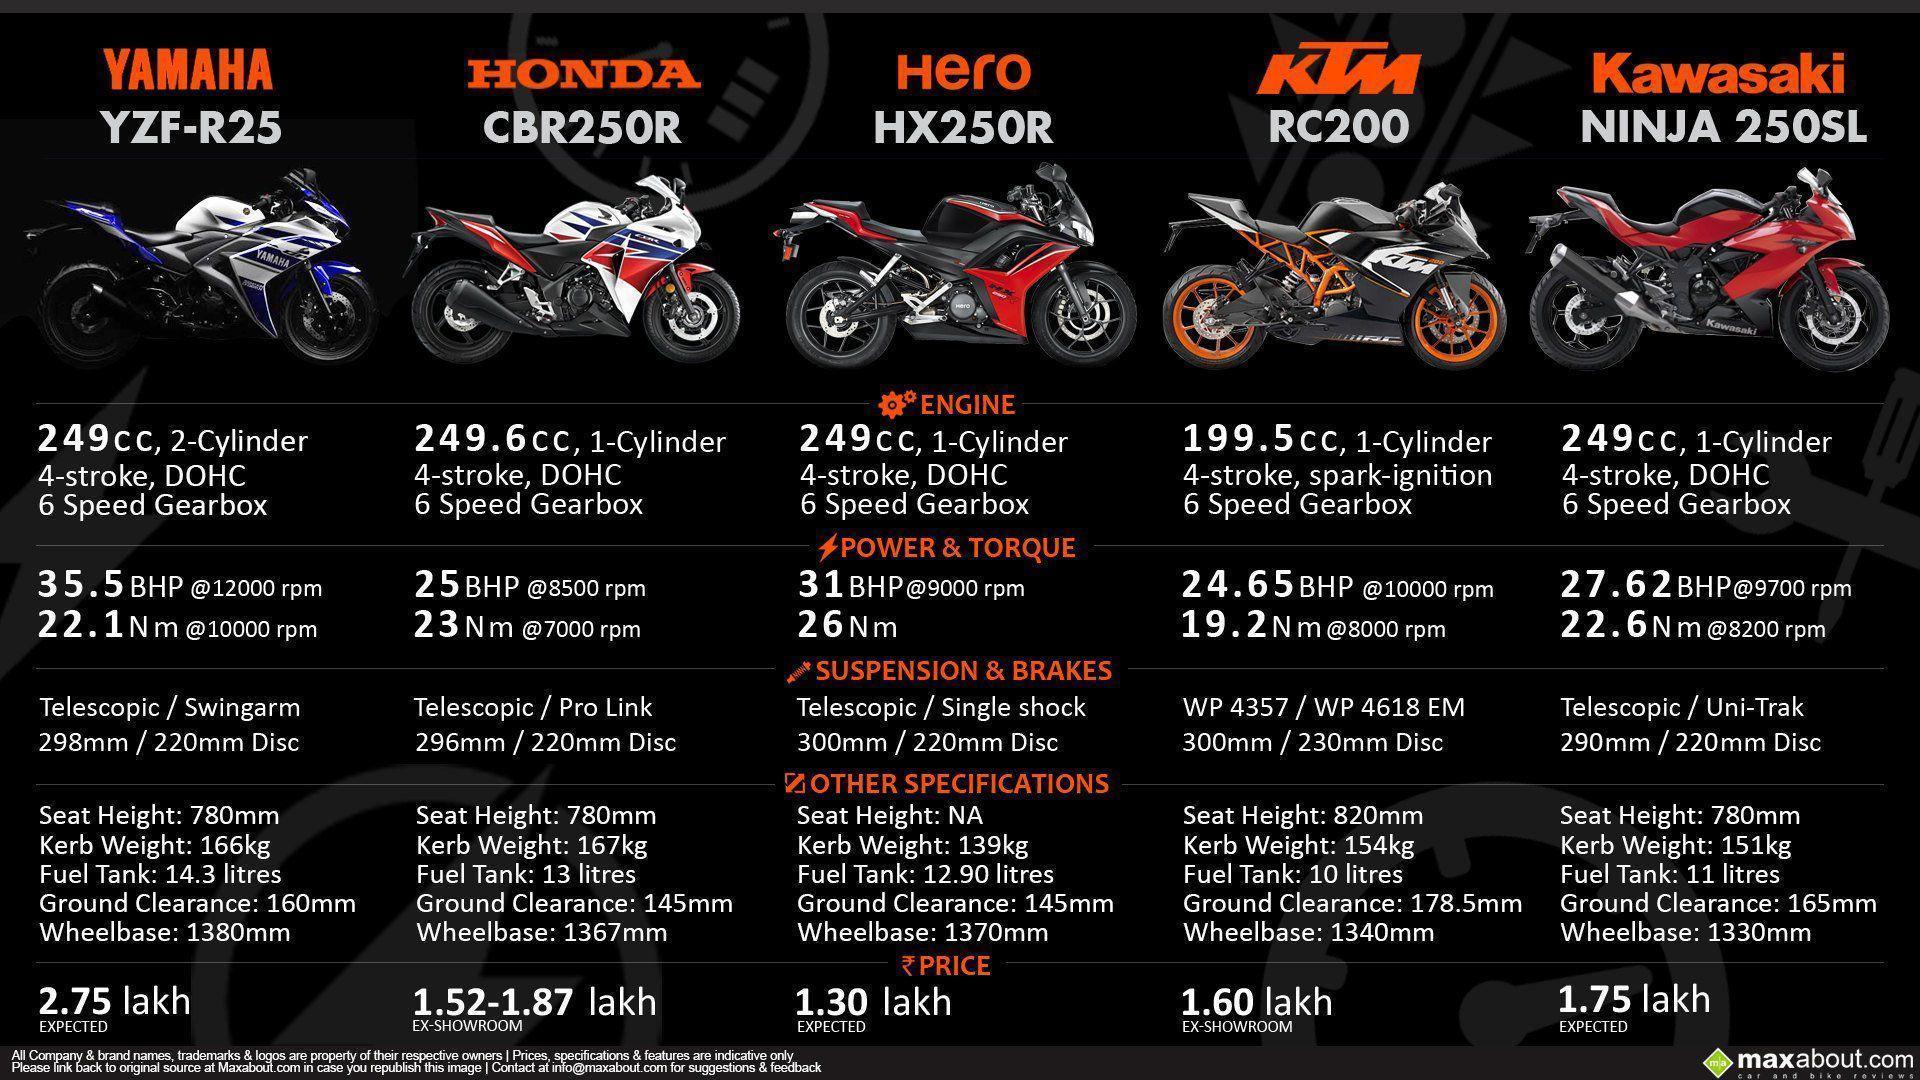 Yamaha YZF R25 Vs CBR250R Vs HX250R Vs KTM RC200 Vs Ninja 250SL